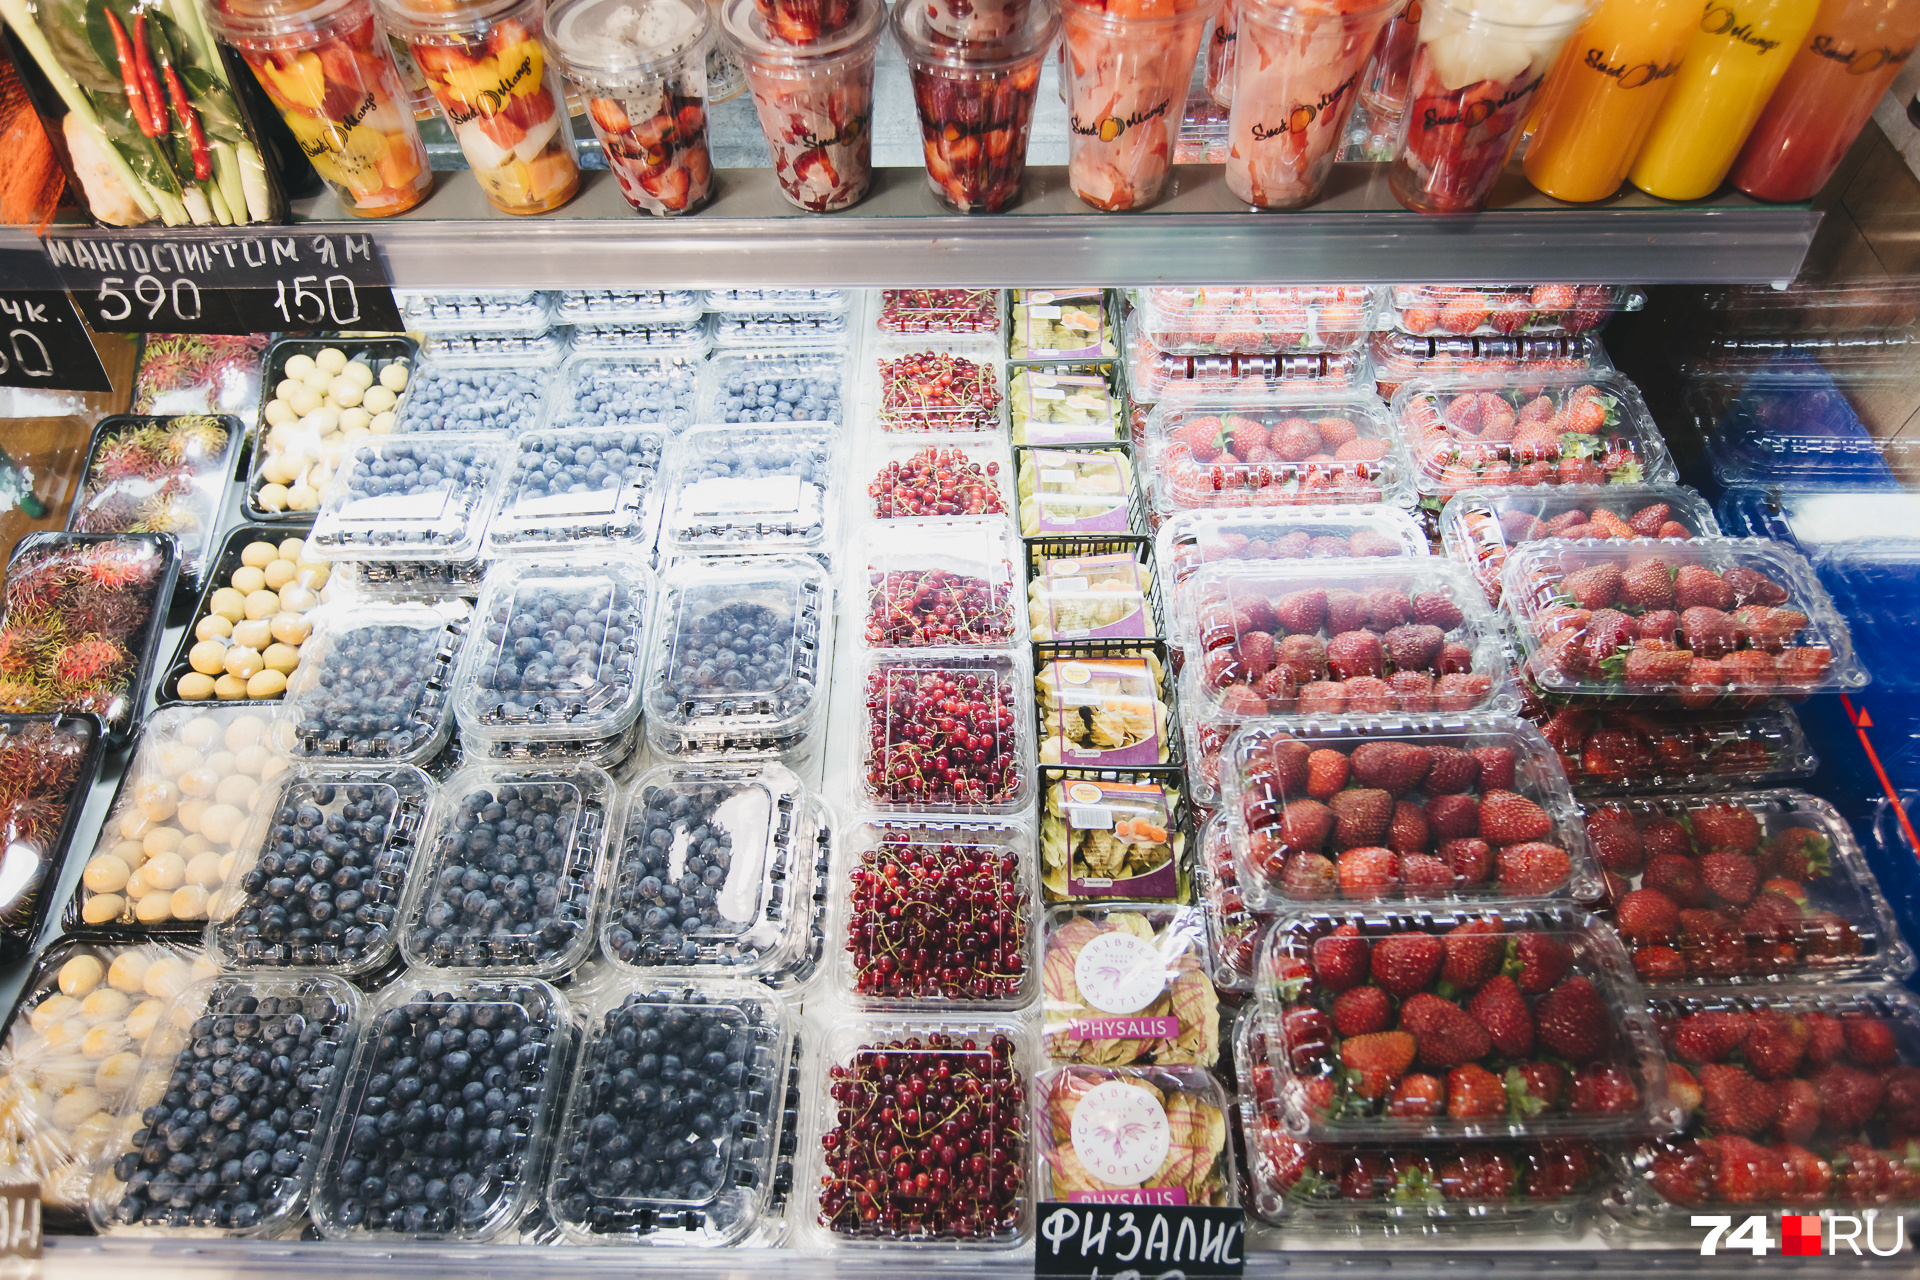 Прогуливаясь по фуд-маркету, можно выбрать экзотические фрукты, ягоды и овощи